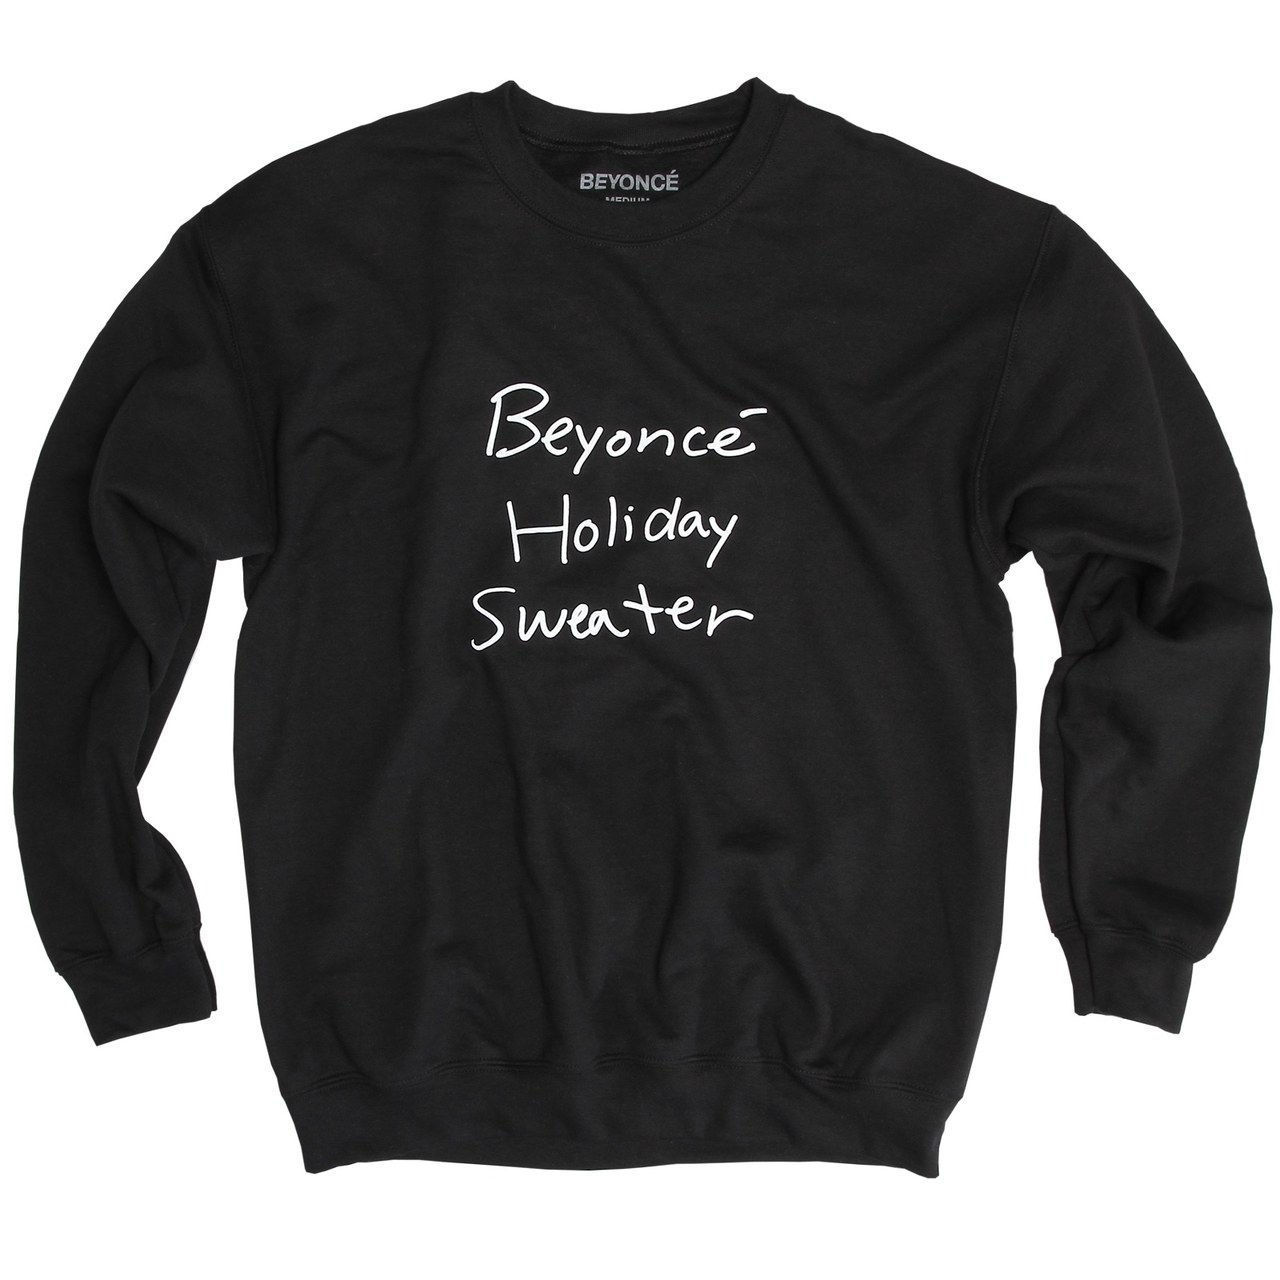 碧昂丝 Holiday Sweatshirt Black, $55, [Beyonce.com](https://shop.beyonce.com/products/62188-beyonce-holiday-sweatshirt-black)